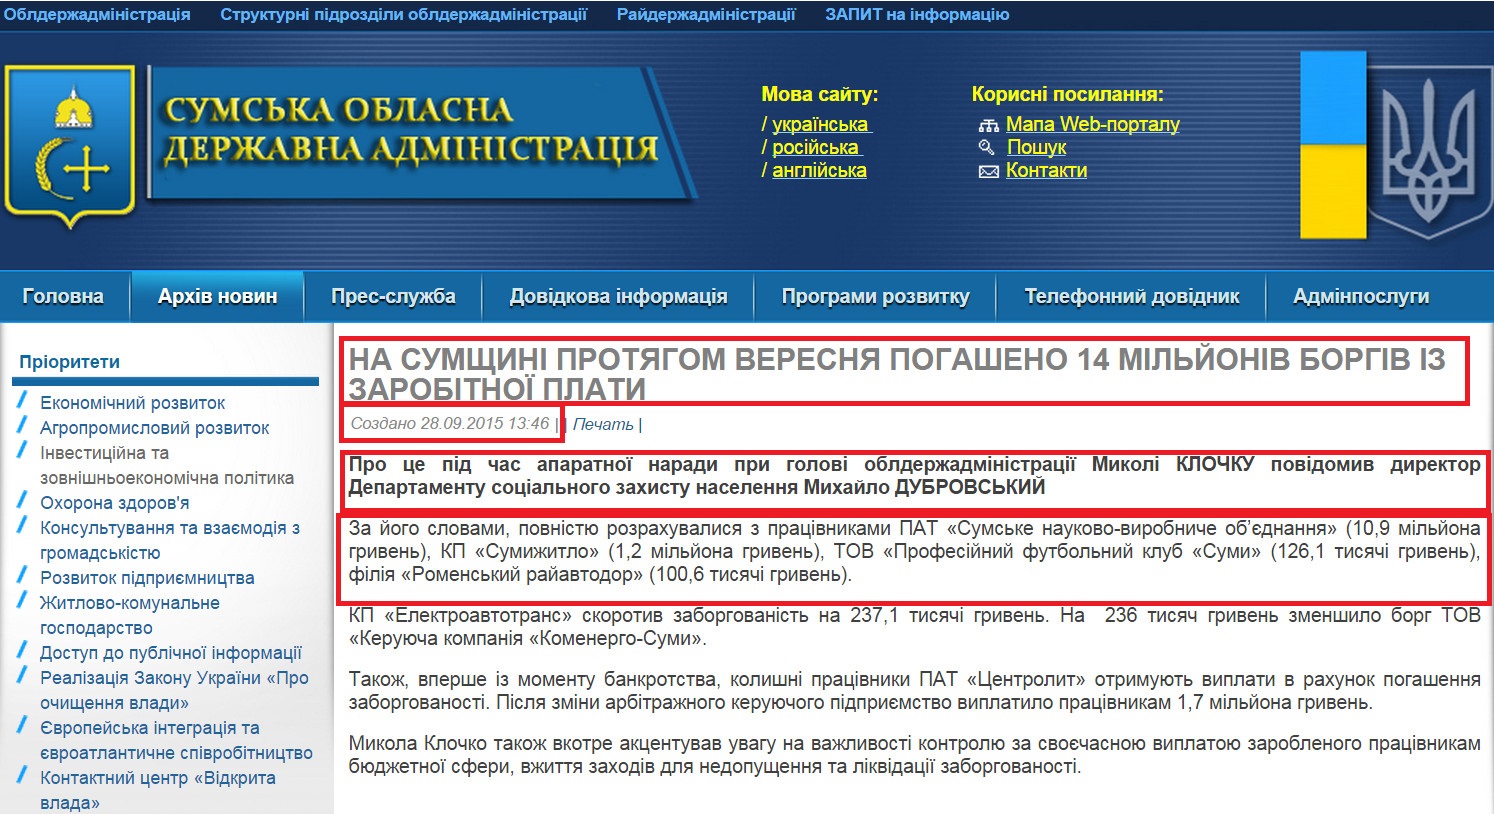 http://sm.gov.ua/ru/2012-02-03-07-53-57/9575-na-sumshchyni-protyahom-veresnya-pohasheno-14-milyoniv-borhiv-iz-zarobitnoyi-platy.html